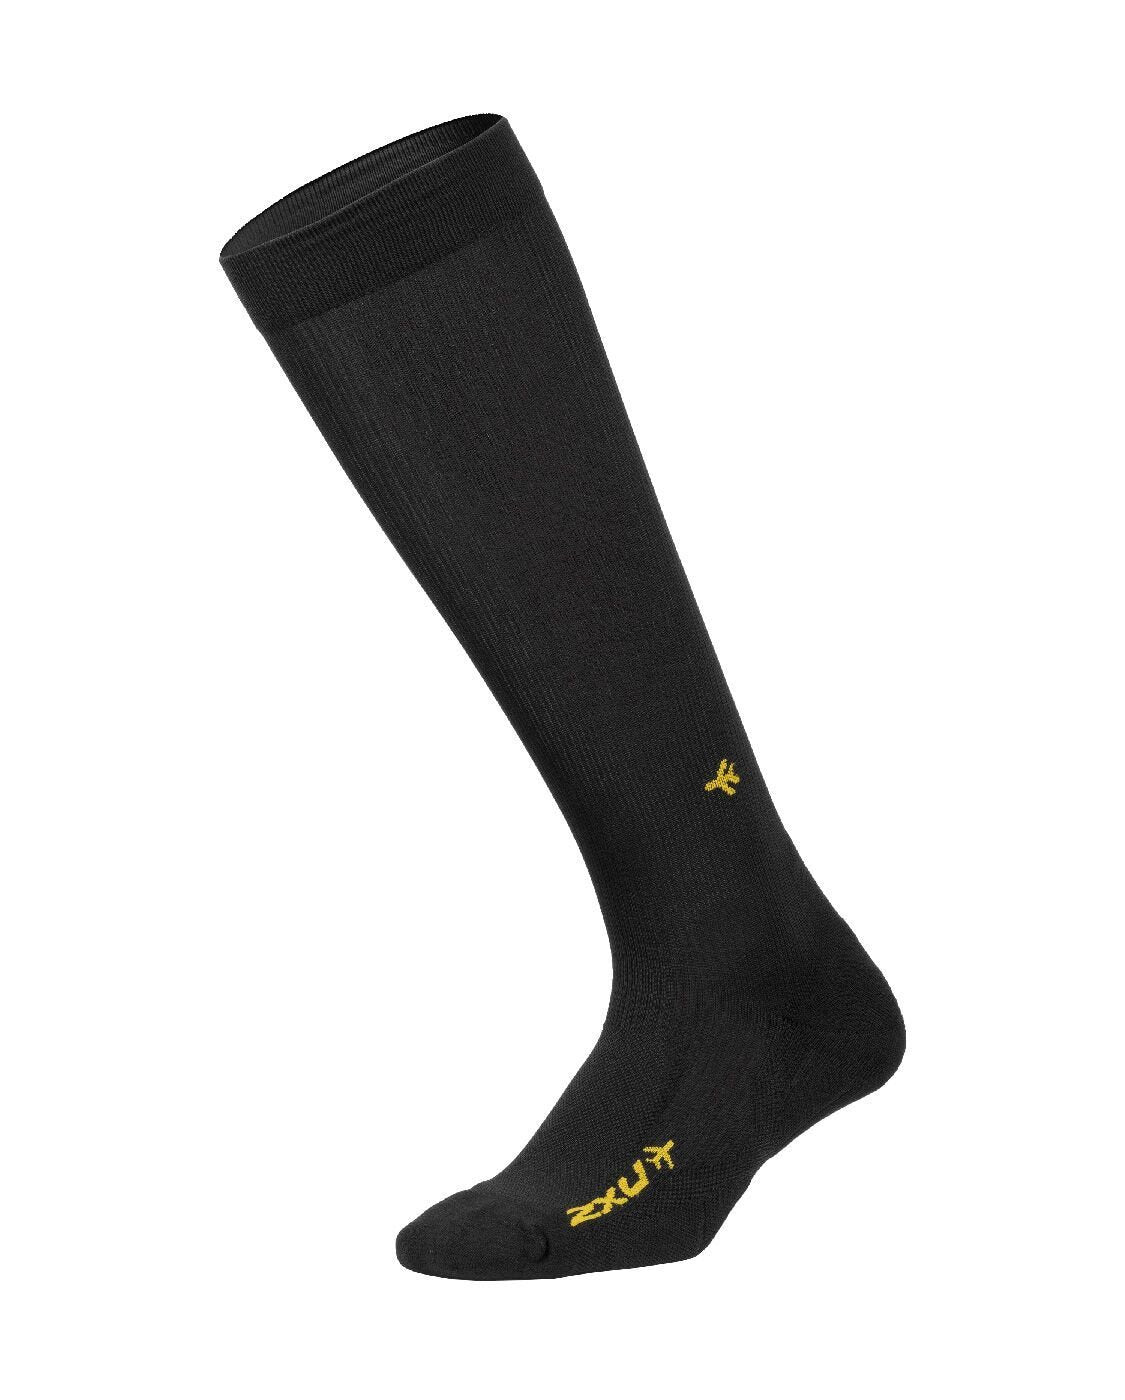 2XU SA - Flight Compression Socks Ultra Light - Black/Black